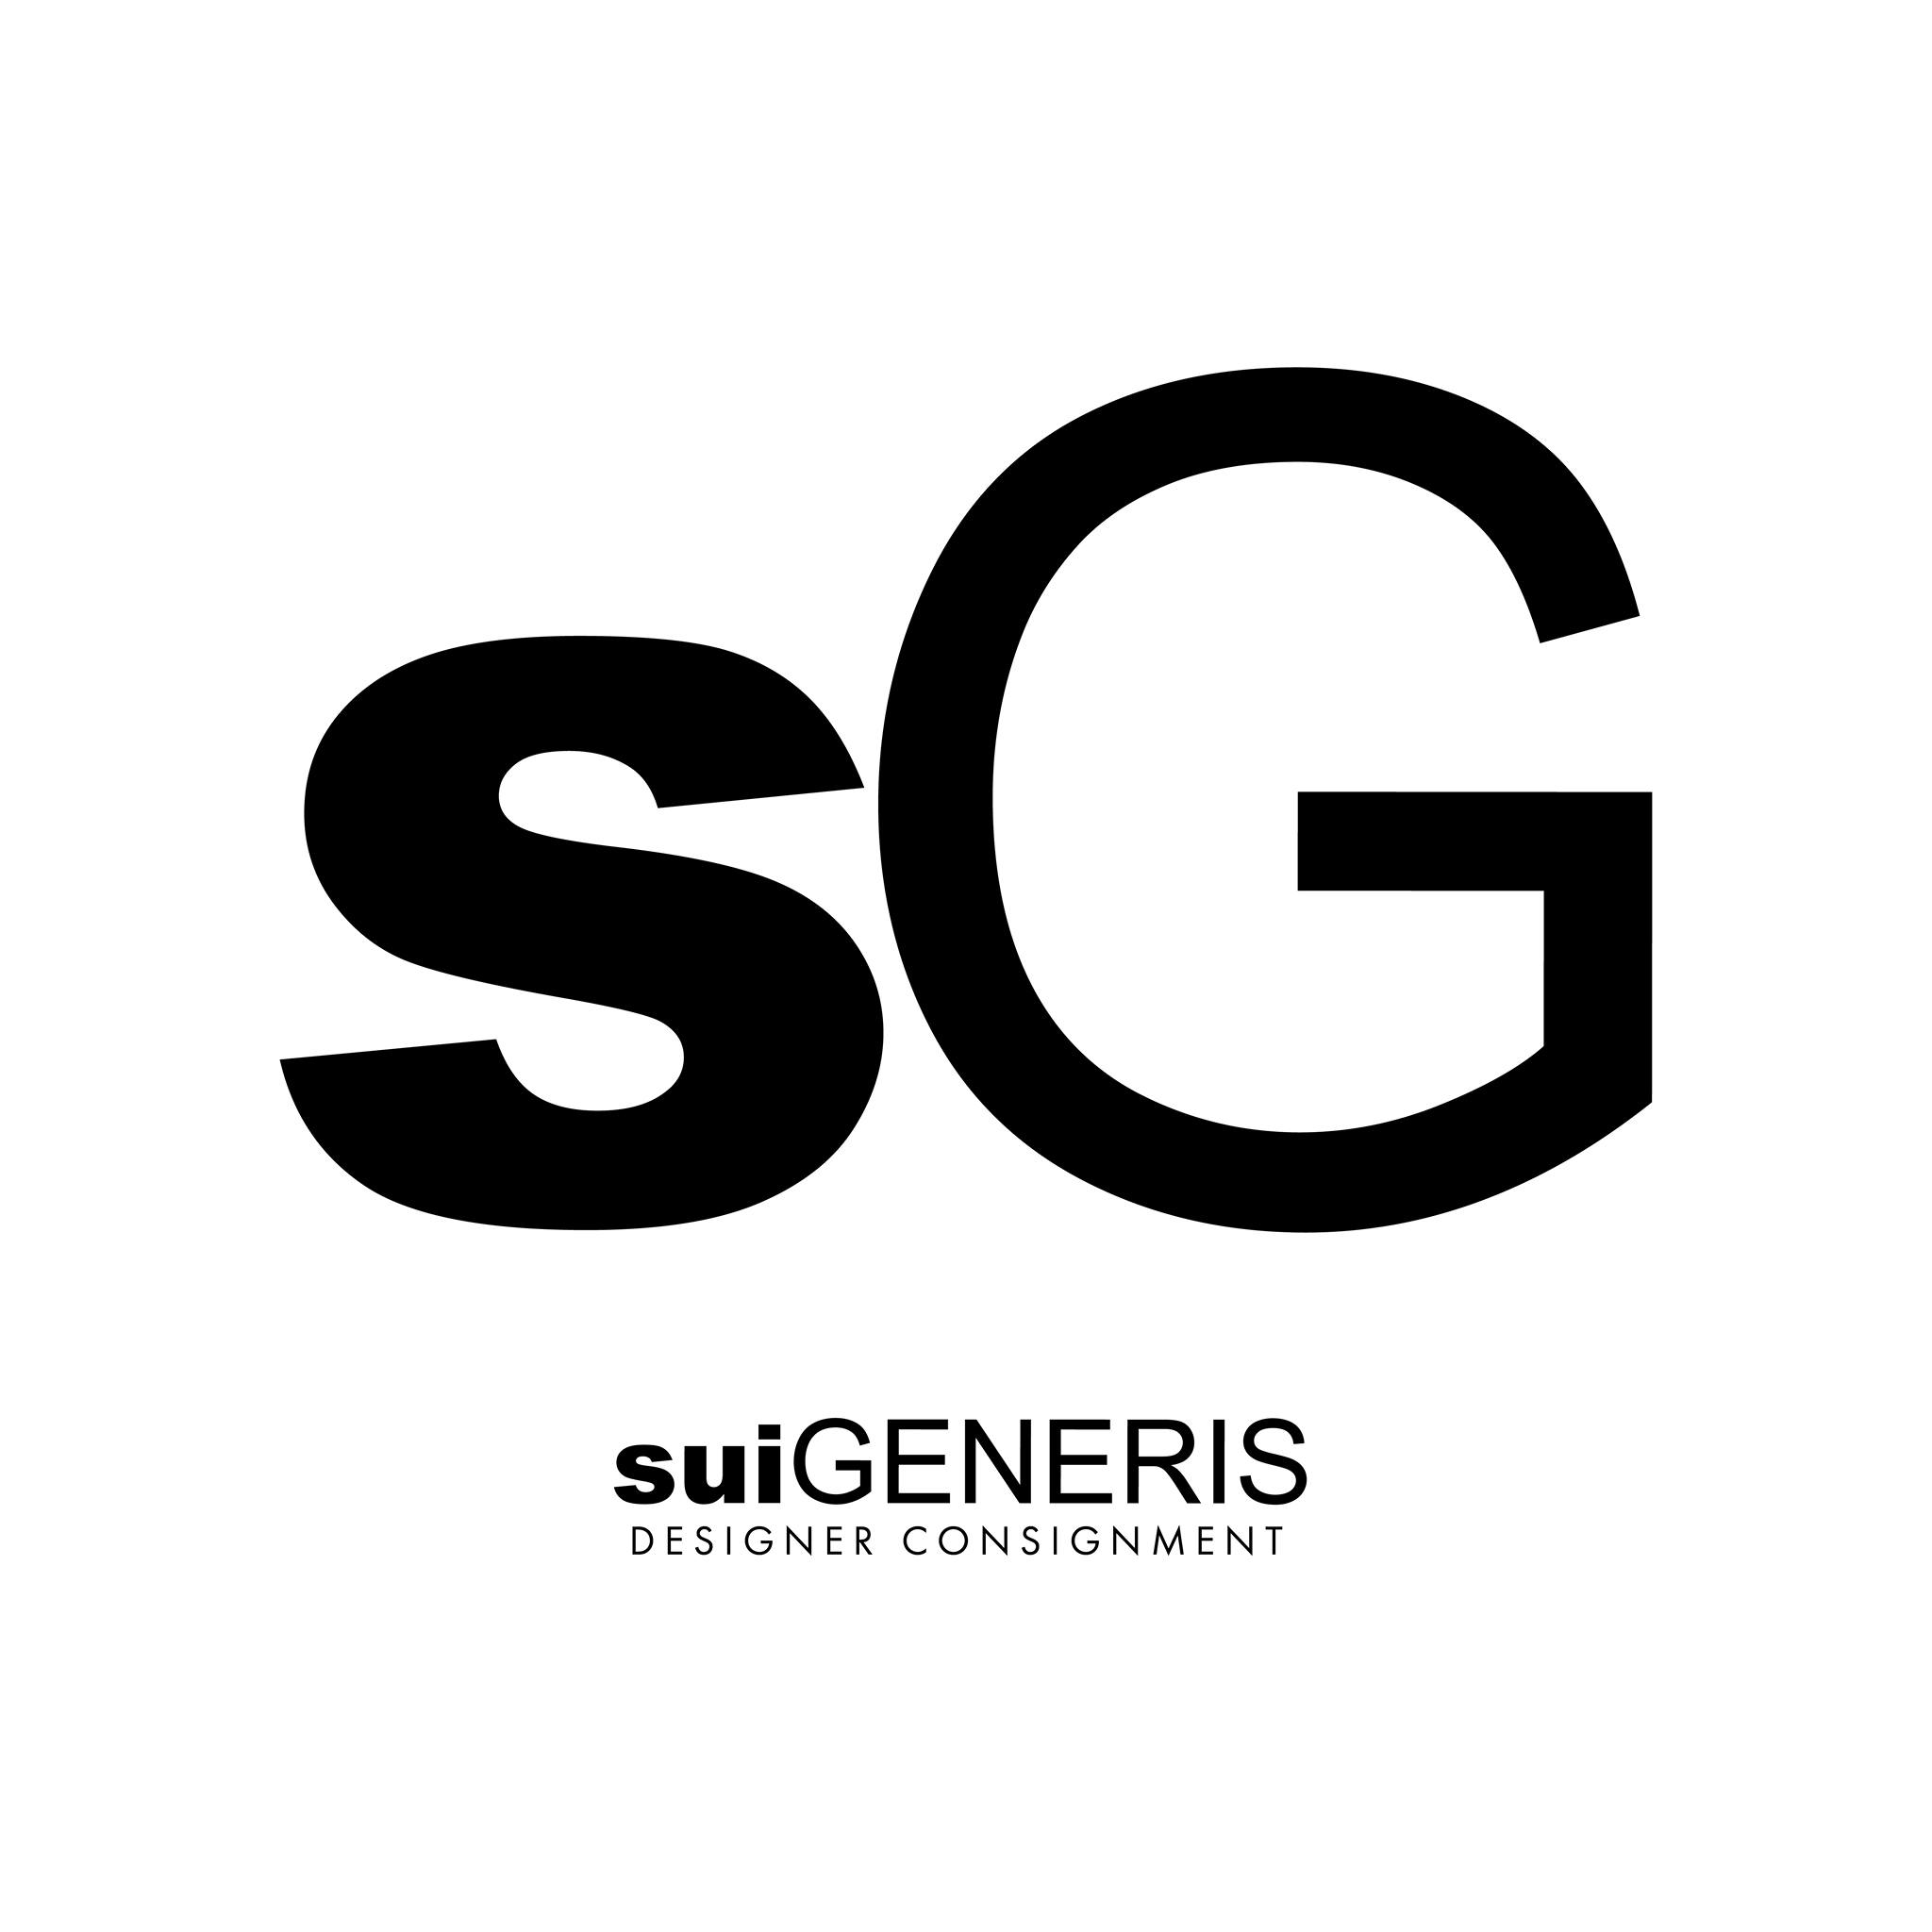 Sui Generis Designer Consignment's logo